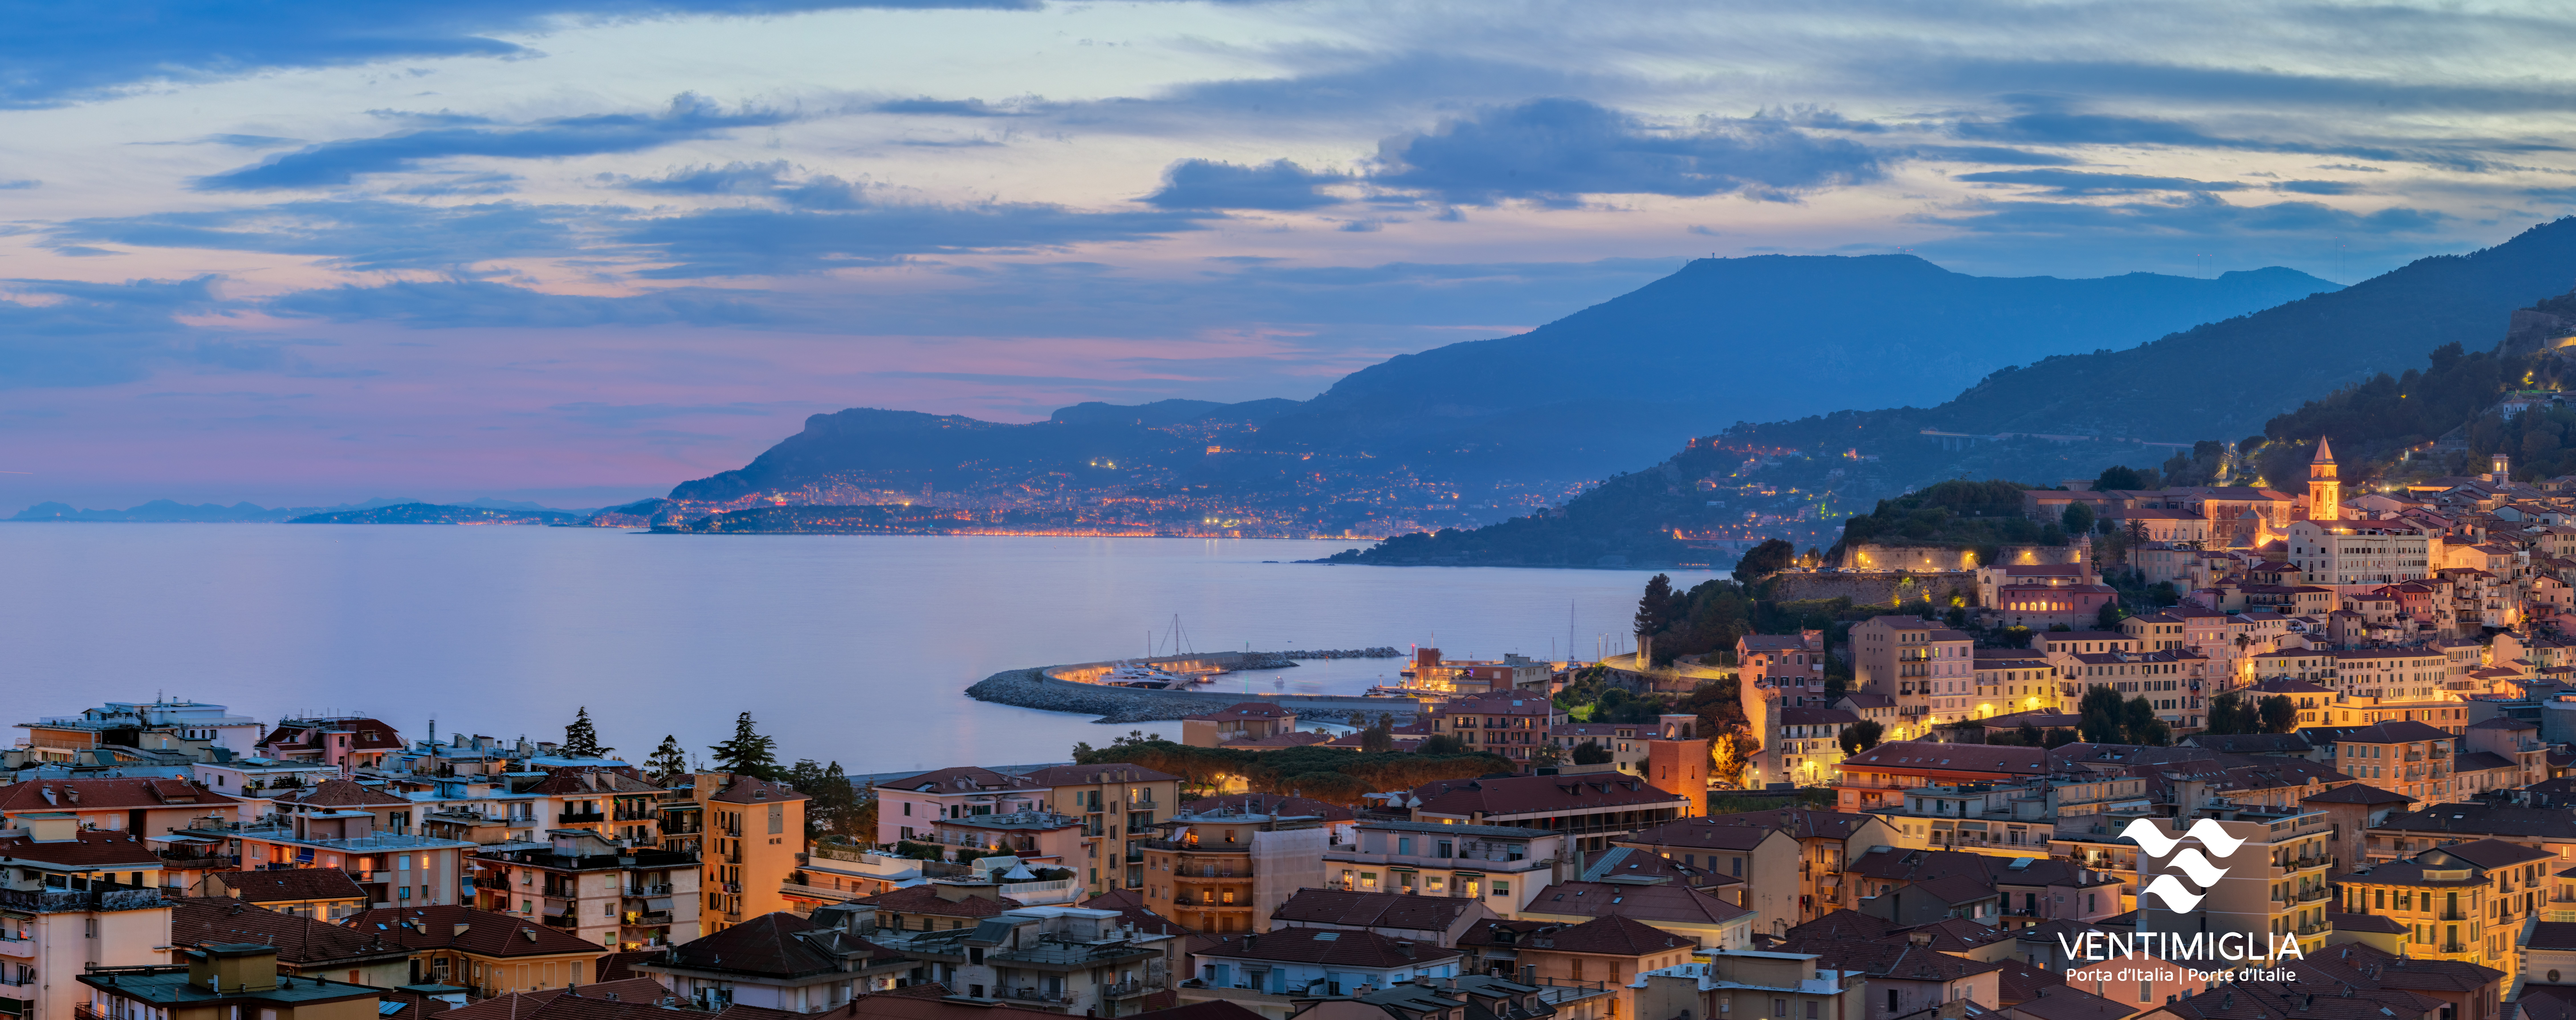 Panoramica serale della Città di Ventimiglia verso la Francia